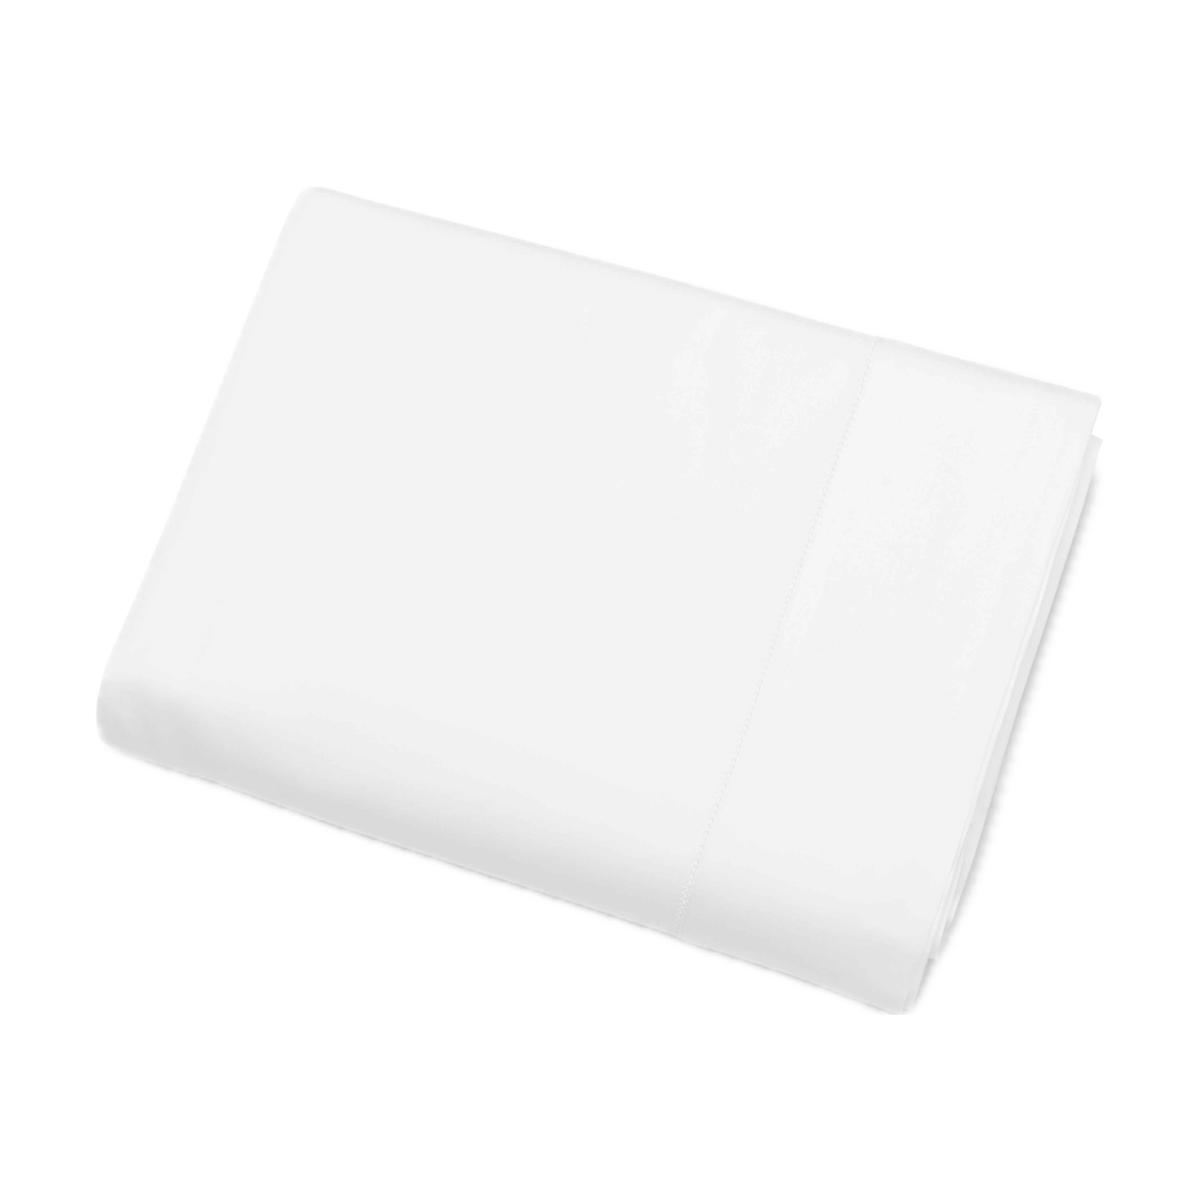 Folded Flat Sheet of White Signoria Nuvola Bedding